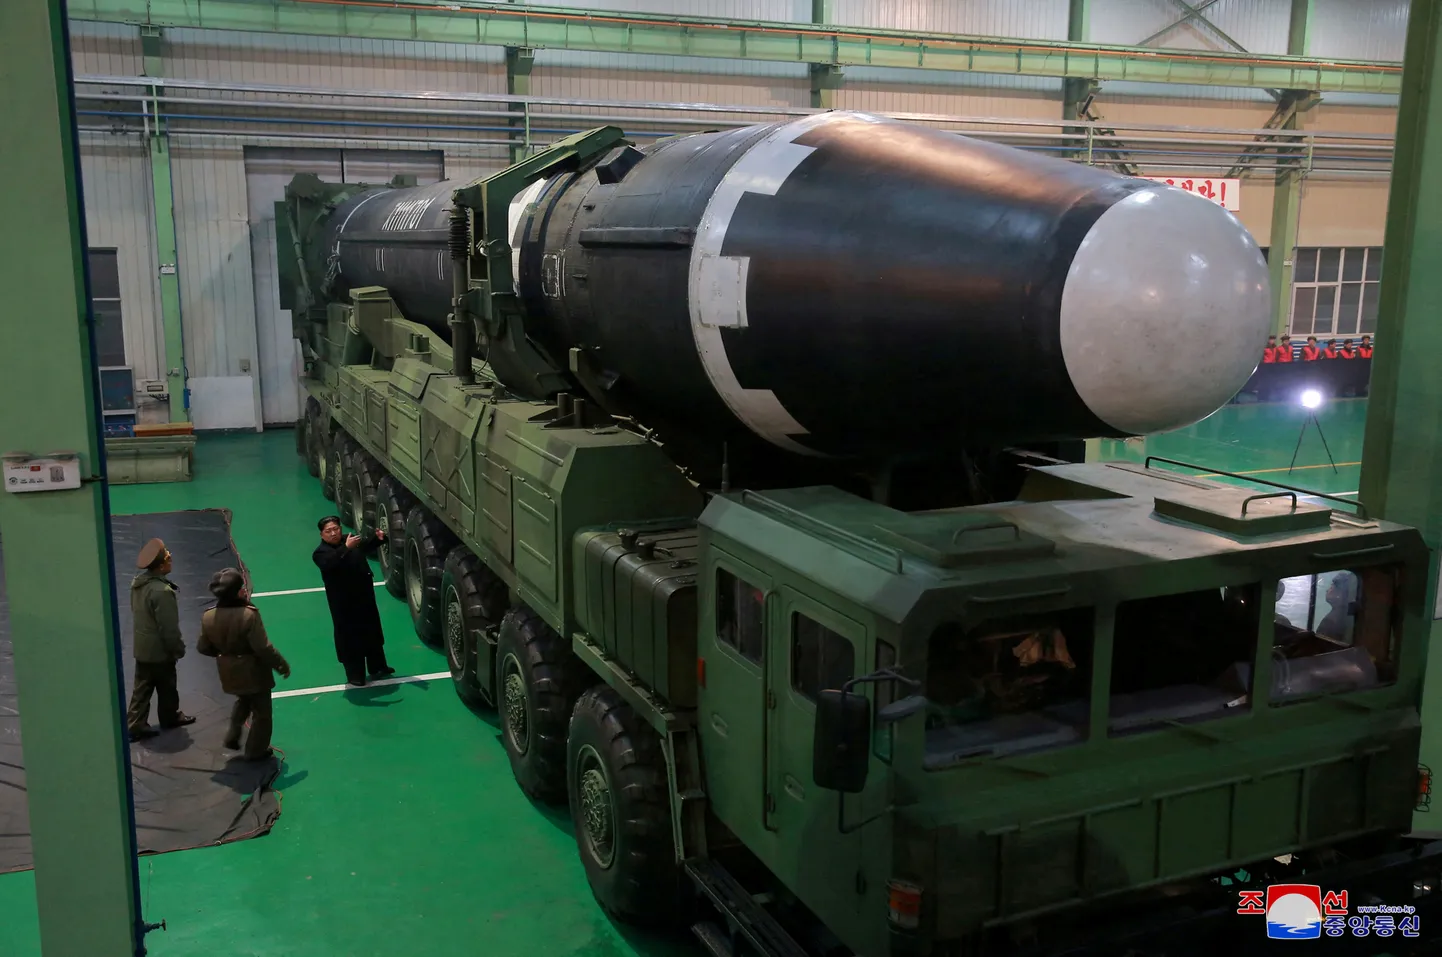 Põhja-Korea liider Kim Jong-un tutvumas mandritevahelise ballistilise raketi süsteemiga. Foto on illustratiivne.